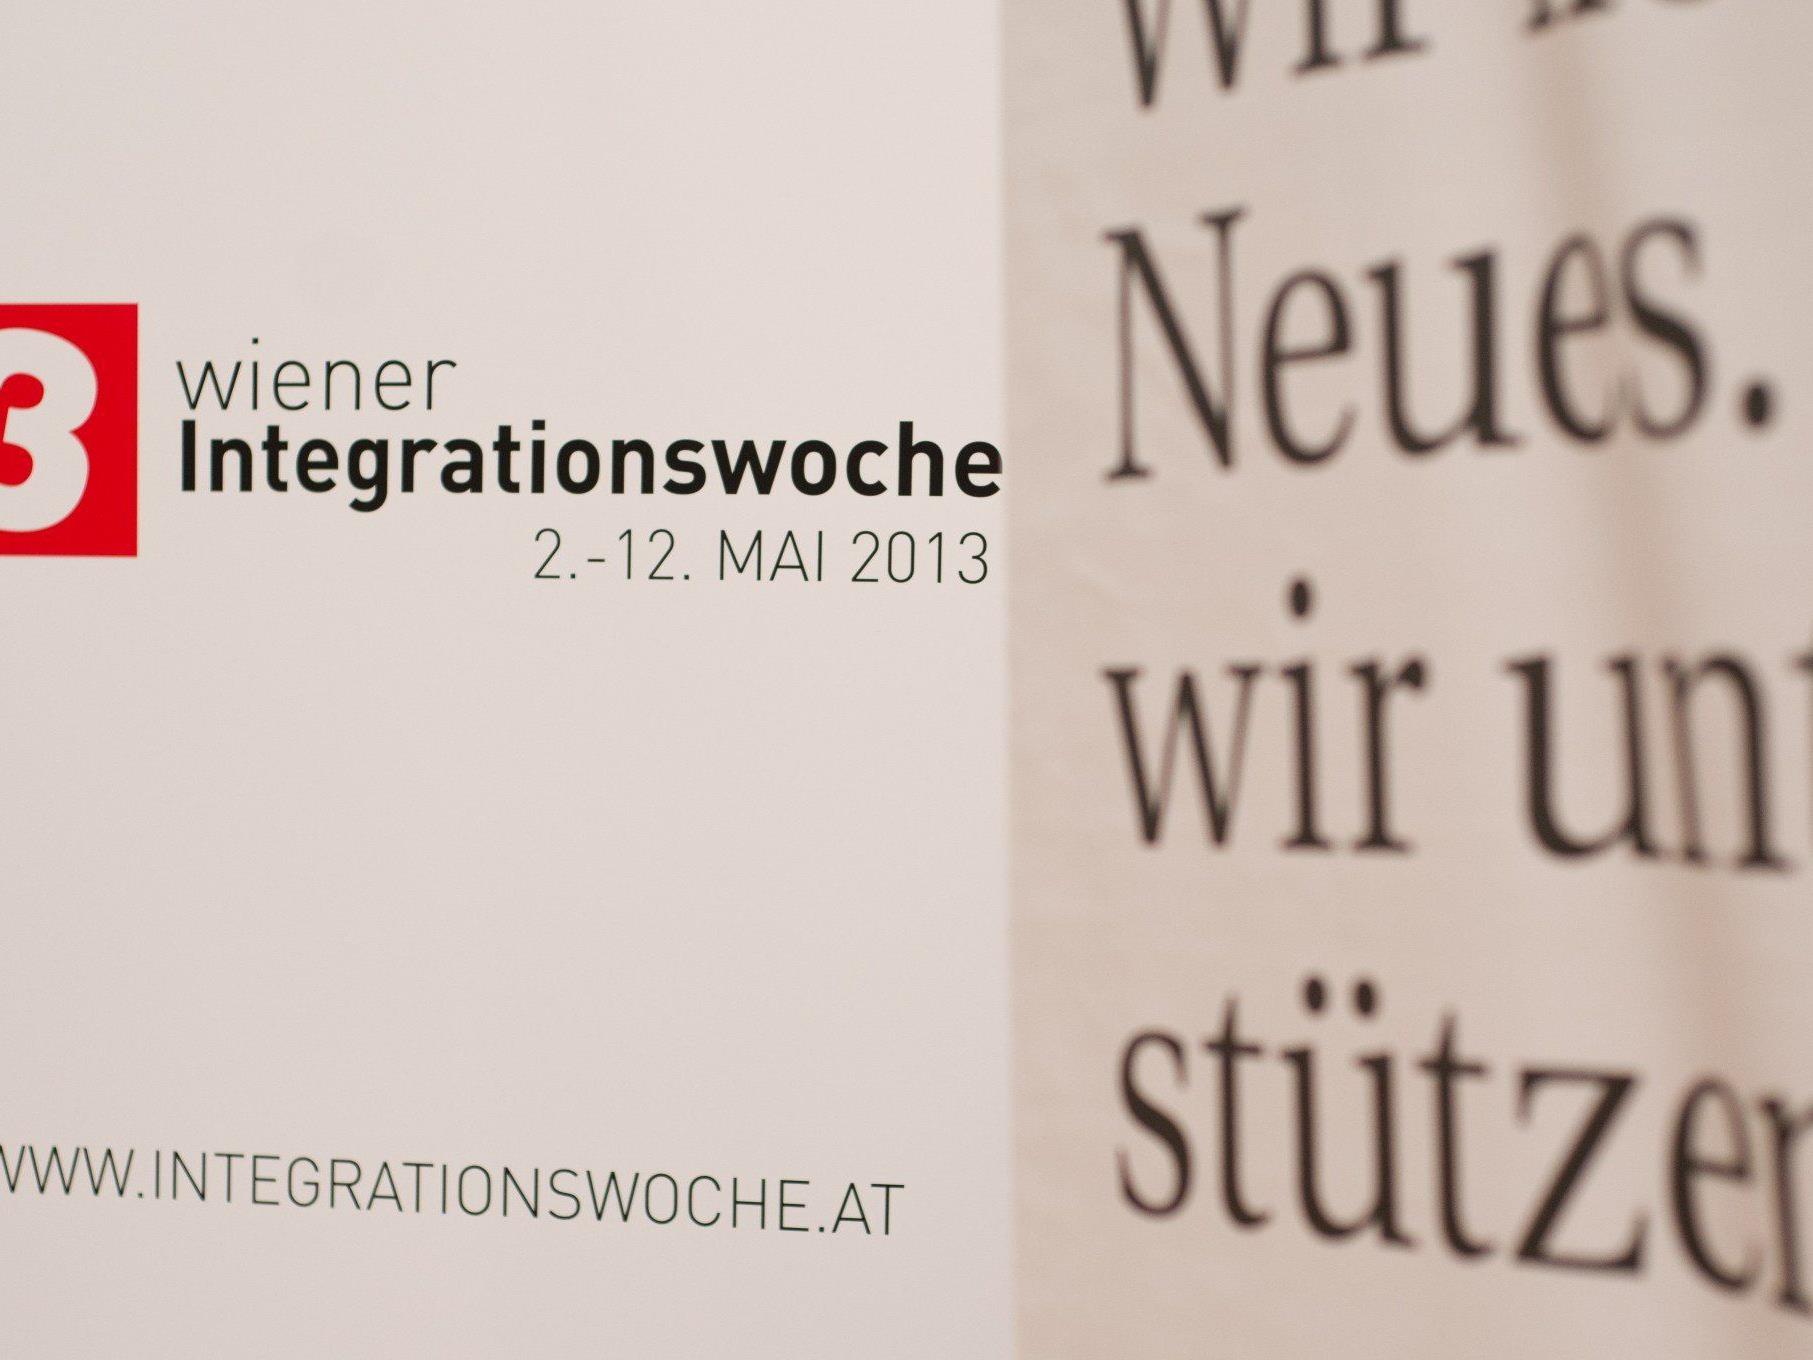 3. Wiener Integrationswoche